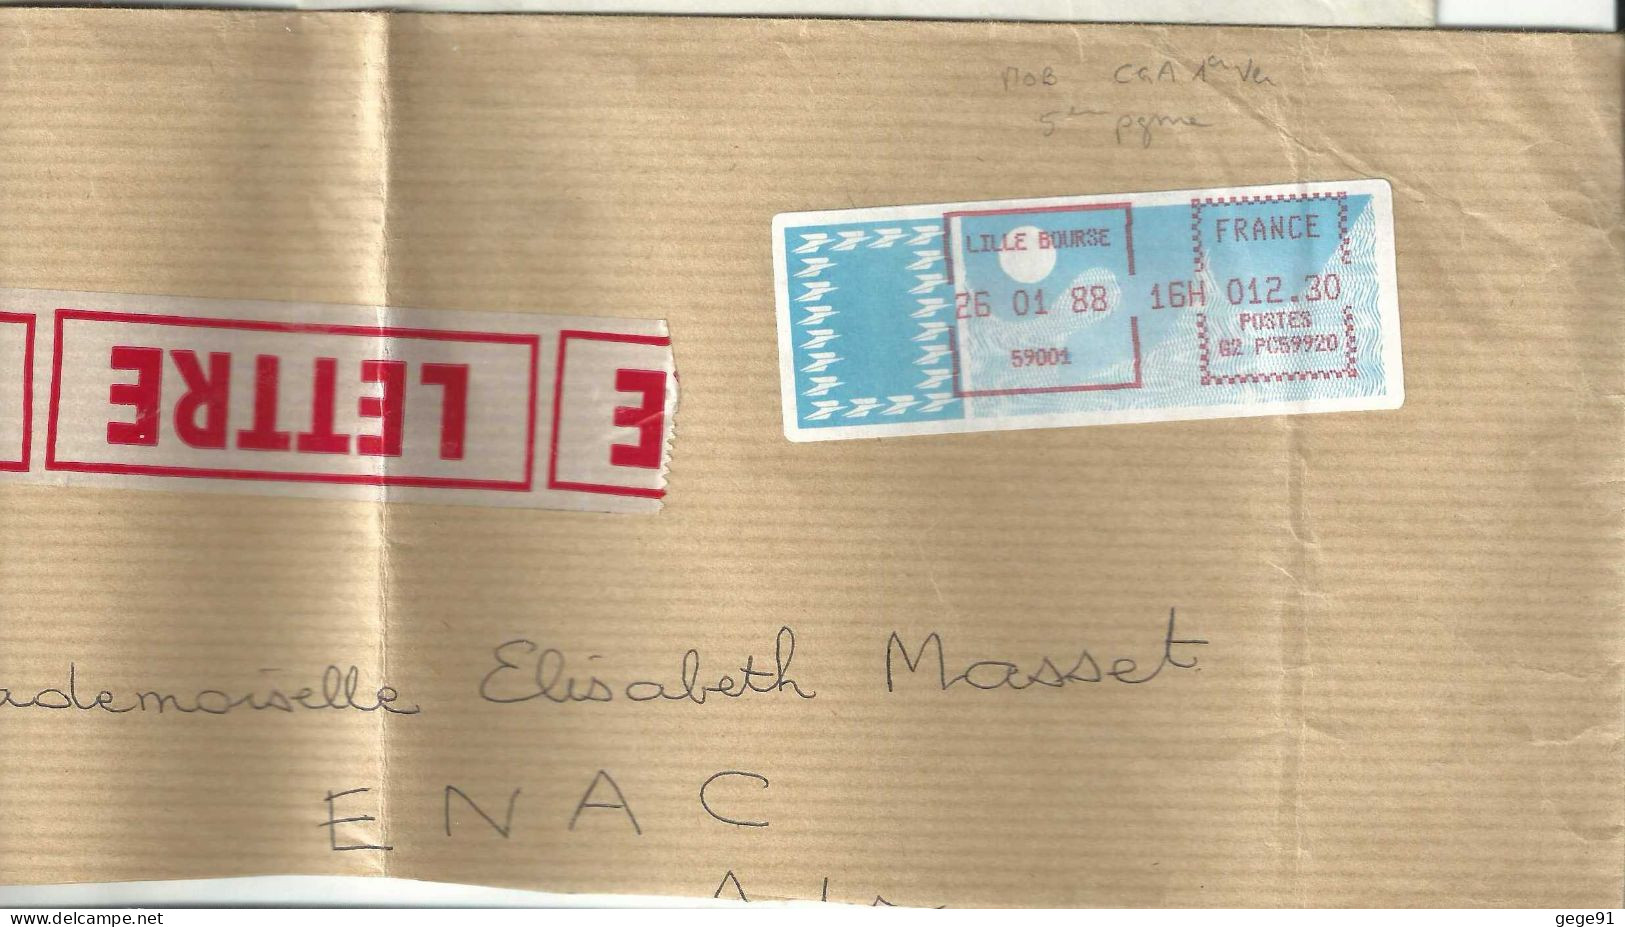 Vignette D'affranchissement - MOG - Lille Bourse - Nord - Enveloppe Réduite - 1985 « Carrier » Papier